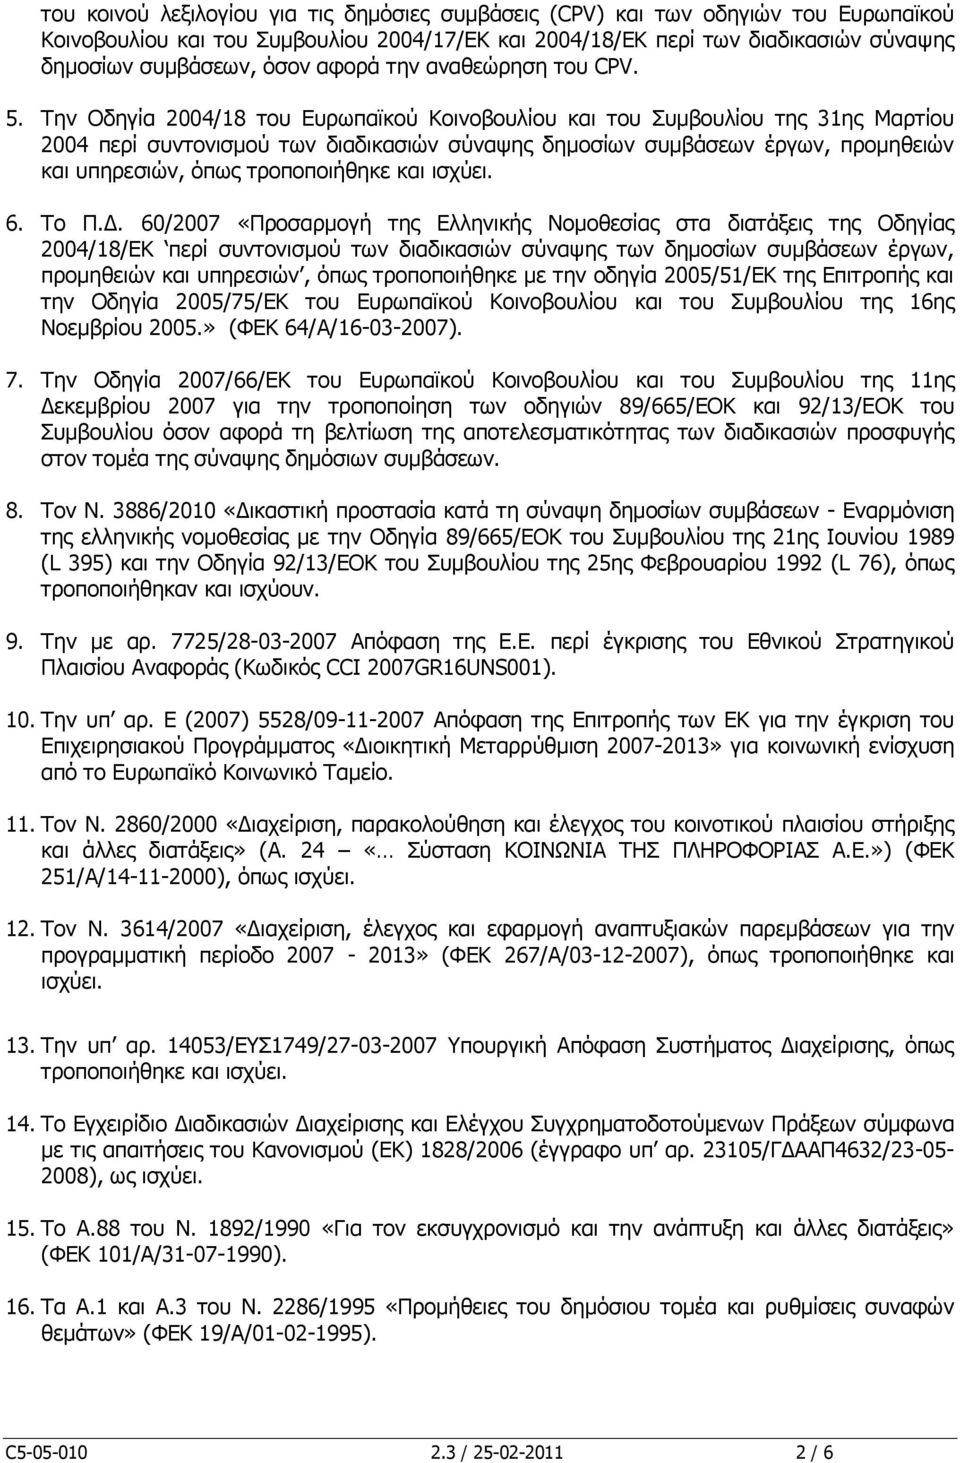 Την Οδηγία 2004/18 του Ευρωπαϊκού Κοινοβουλίου και του Συμβουλίου της 31ης Μαρτίου 2004 περί συντονισμού των διαδικασιών σύναψης δημοσίων συμβάσεων έργων, προμηθειών και υπηρεσιών, όπως τροποποιήθηκε